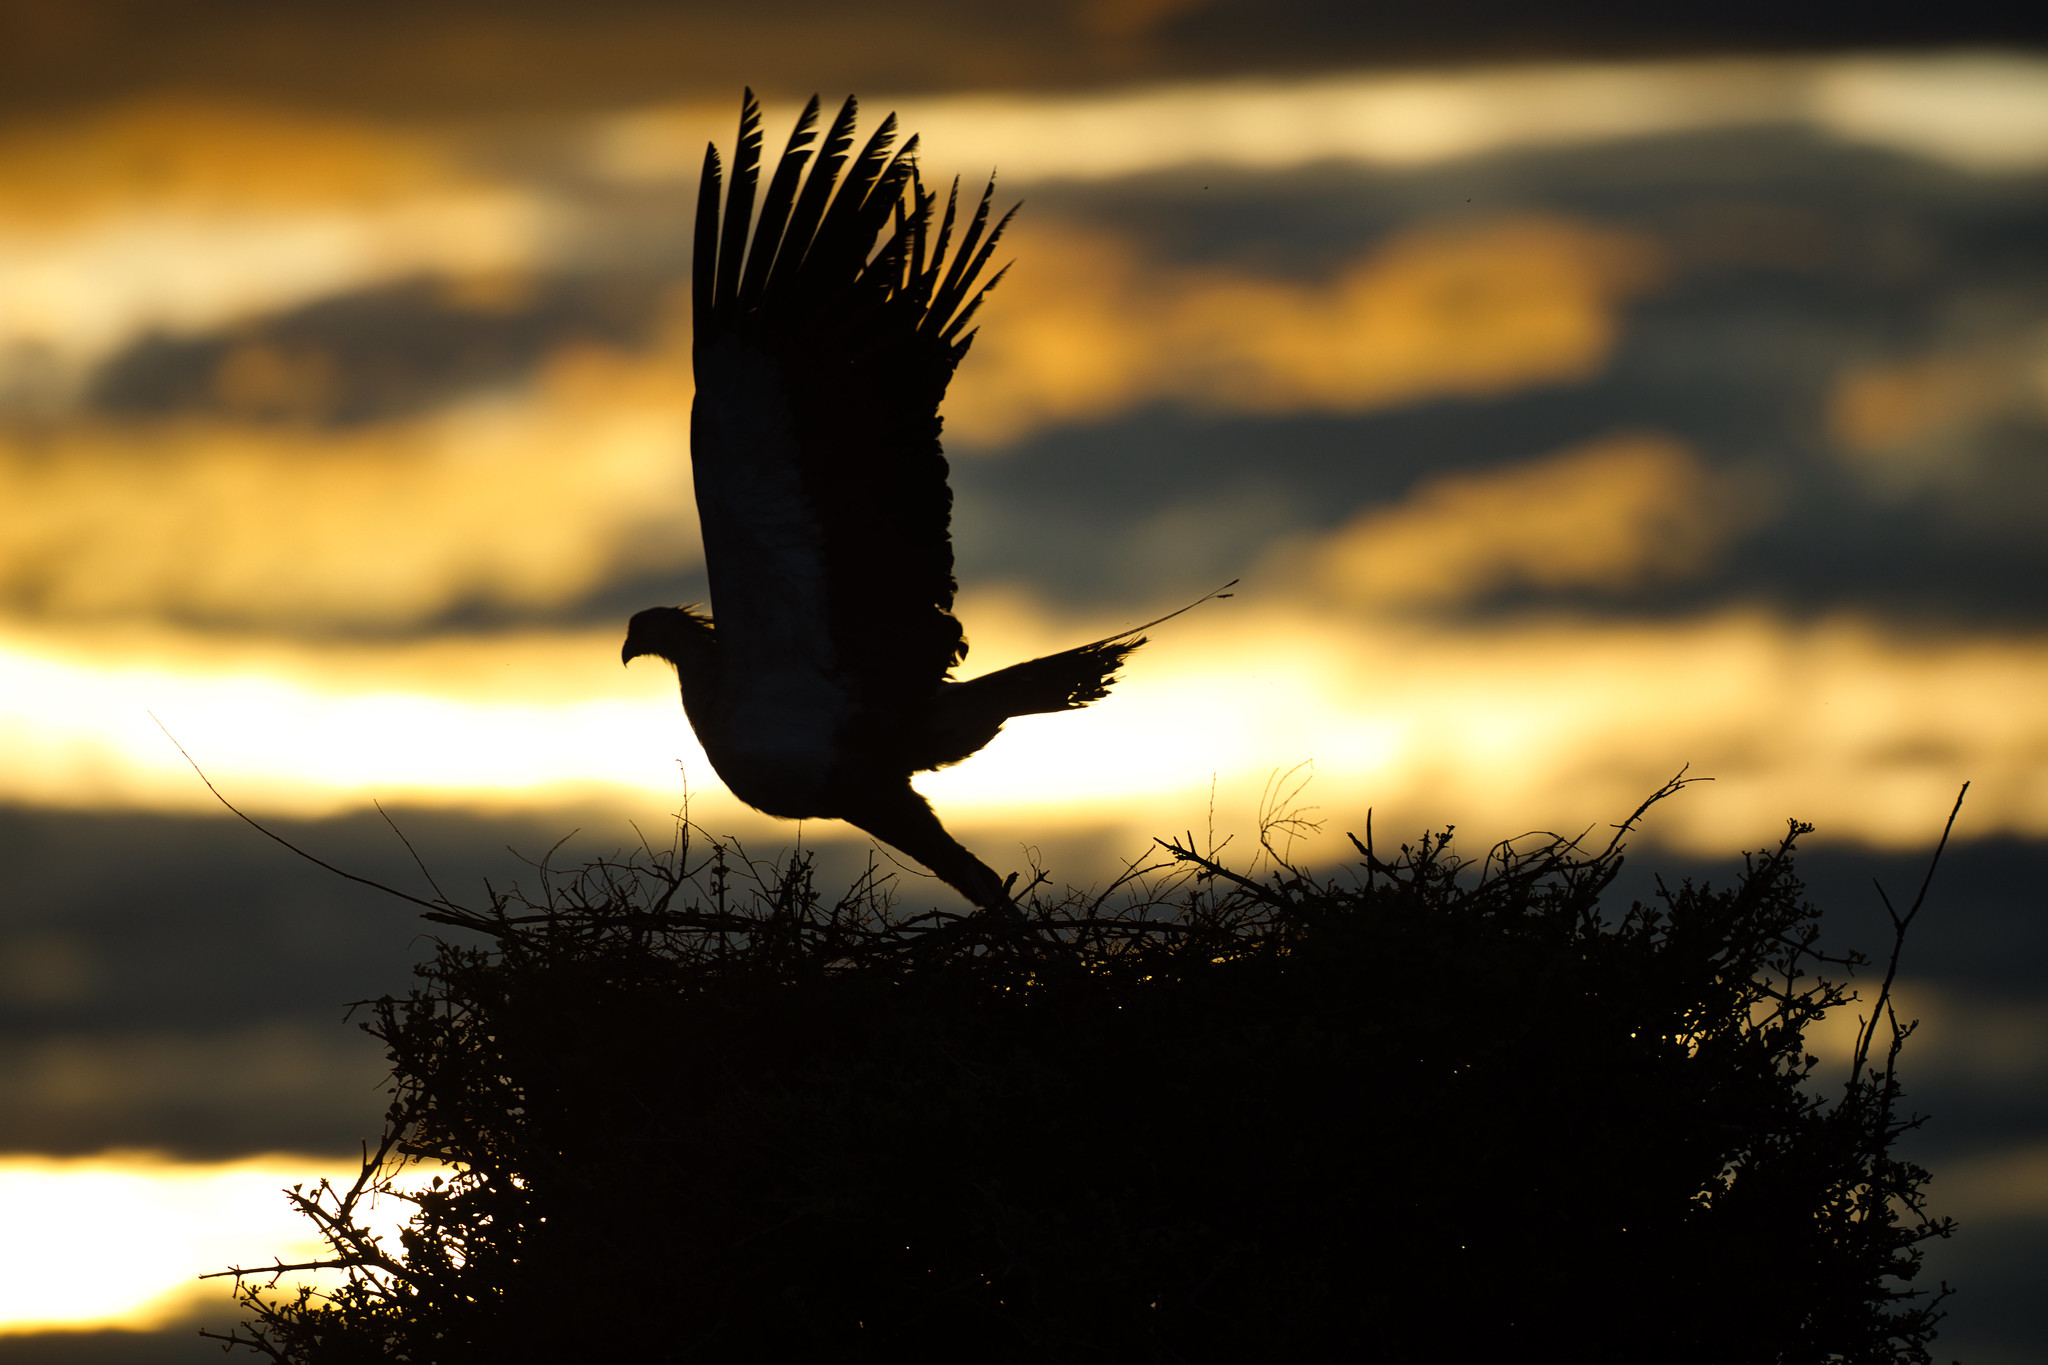 Secretary Bird in Sunrise - Masai Mara